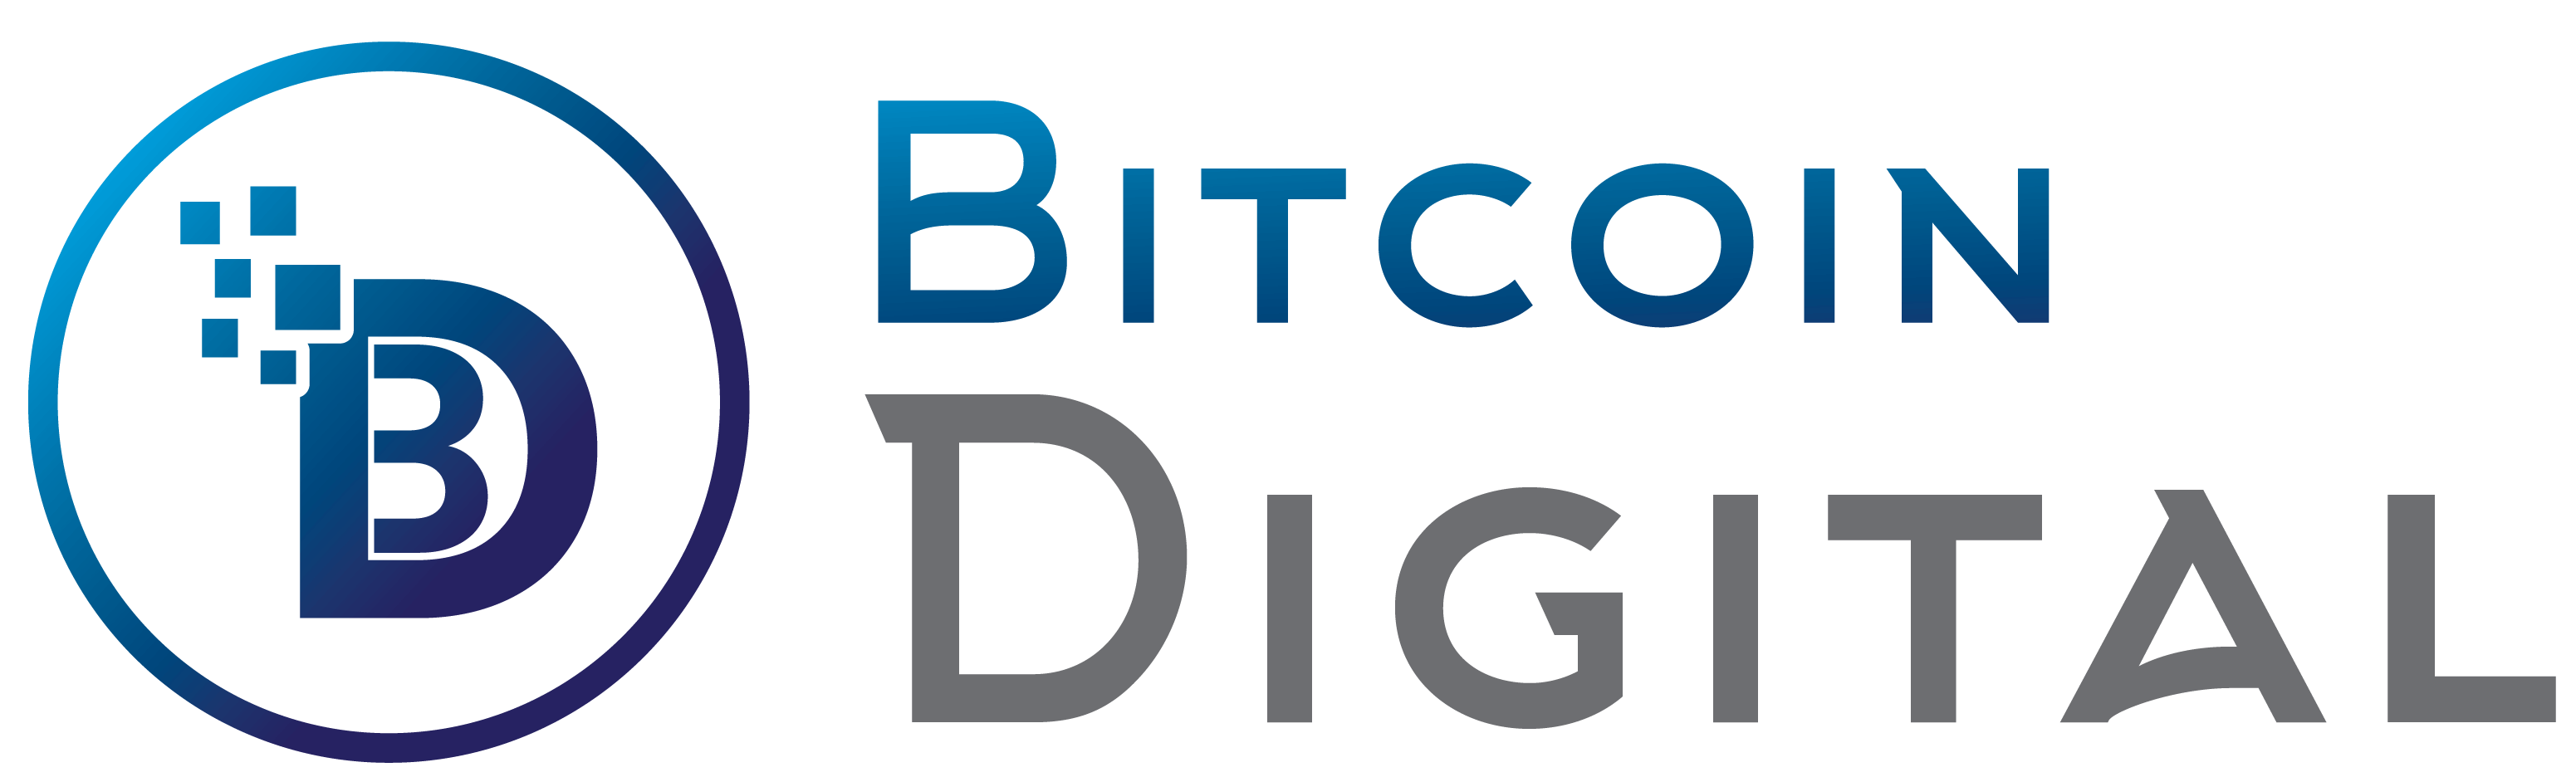 Bitcoin Digital - Bitcoin Digital टीम